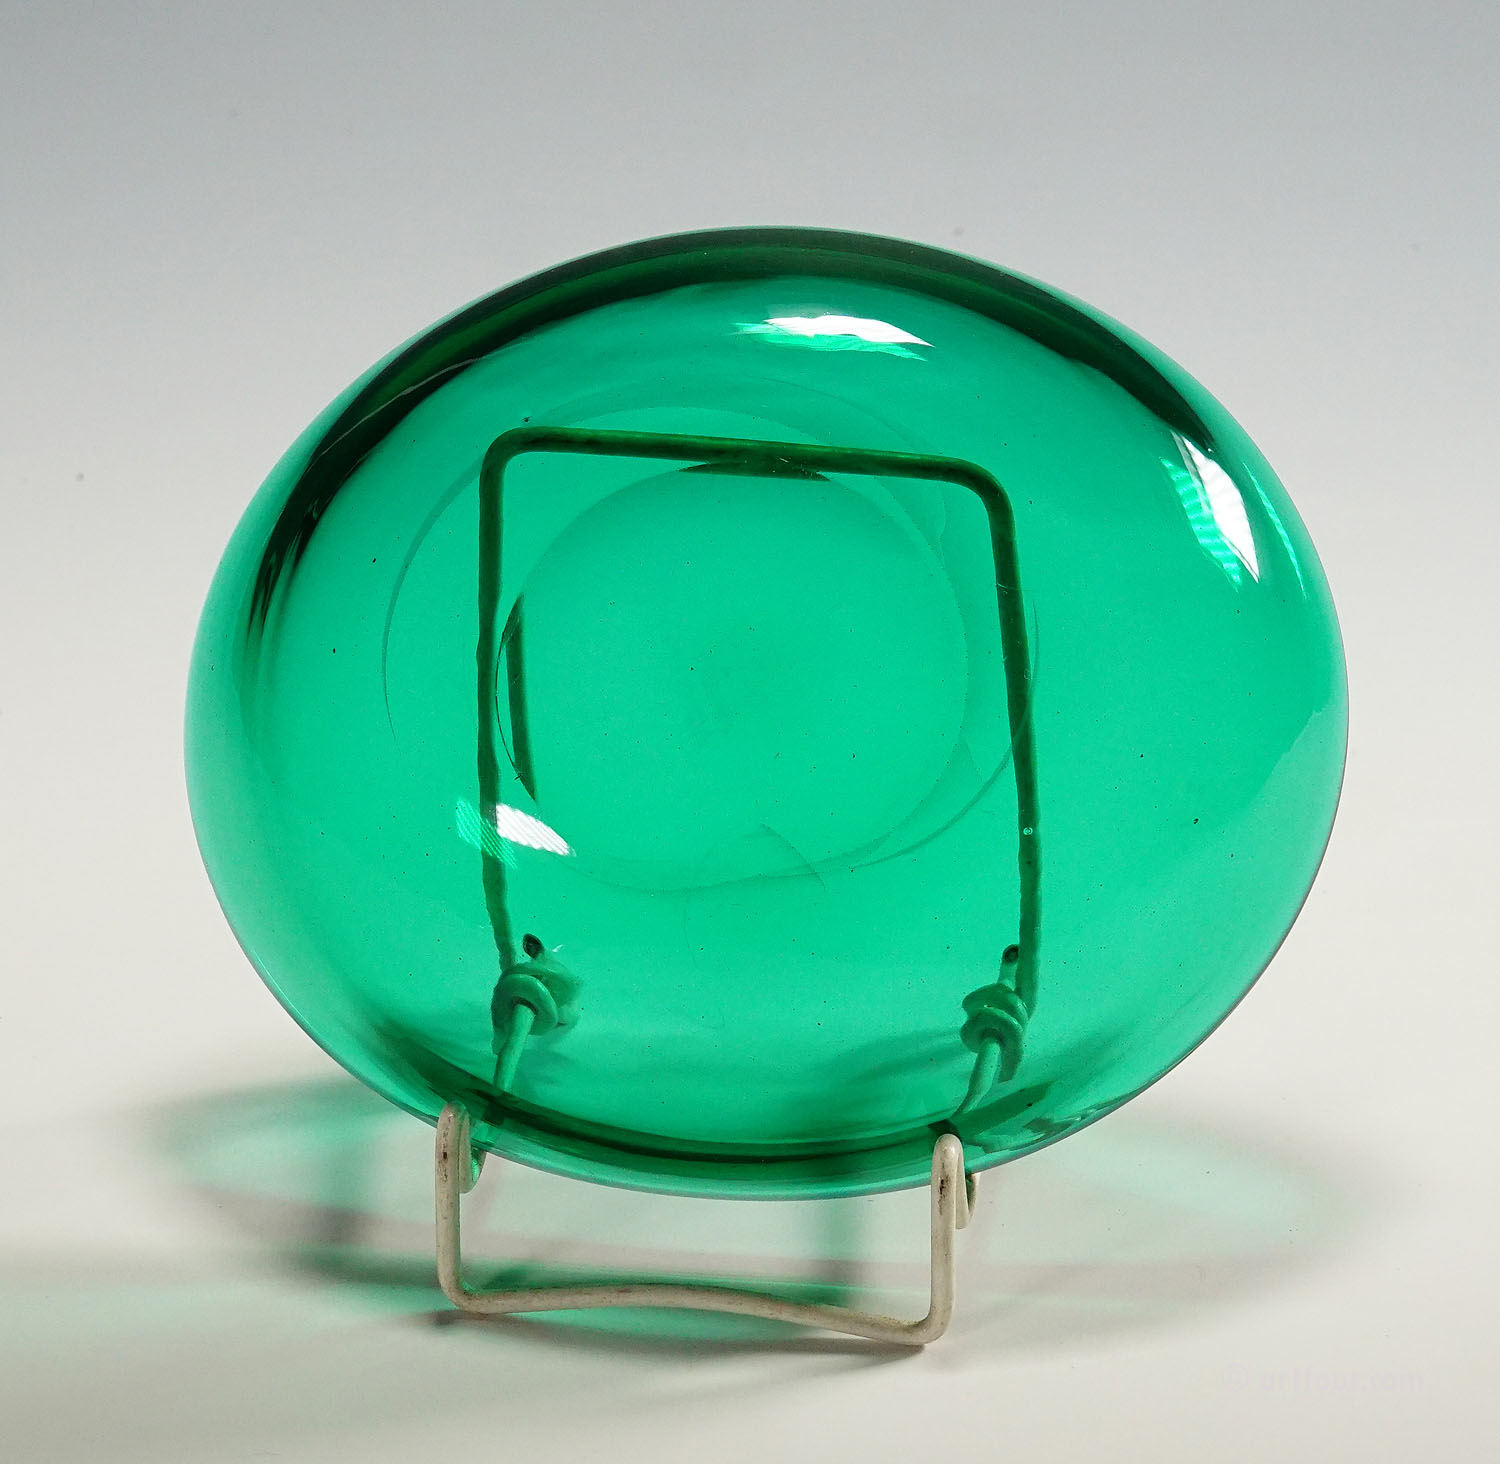 Small Oval Dish in Green Glass, Venini Murano ca. 1930s